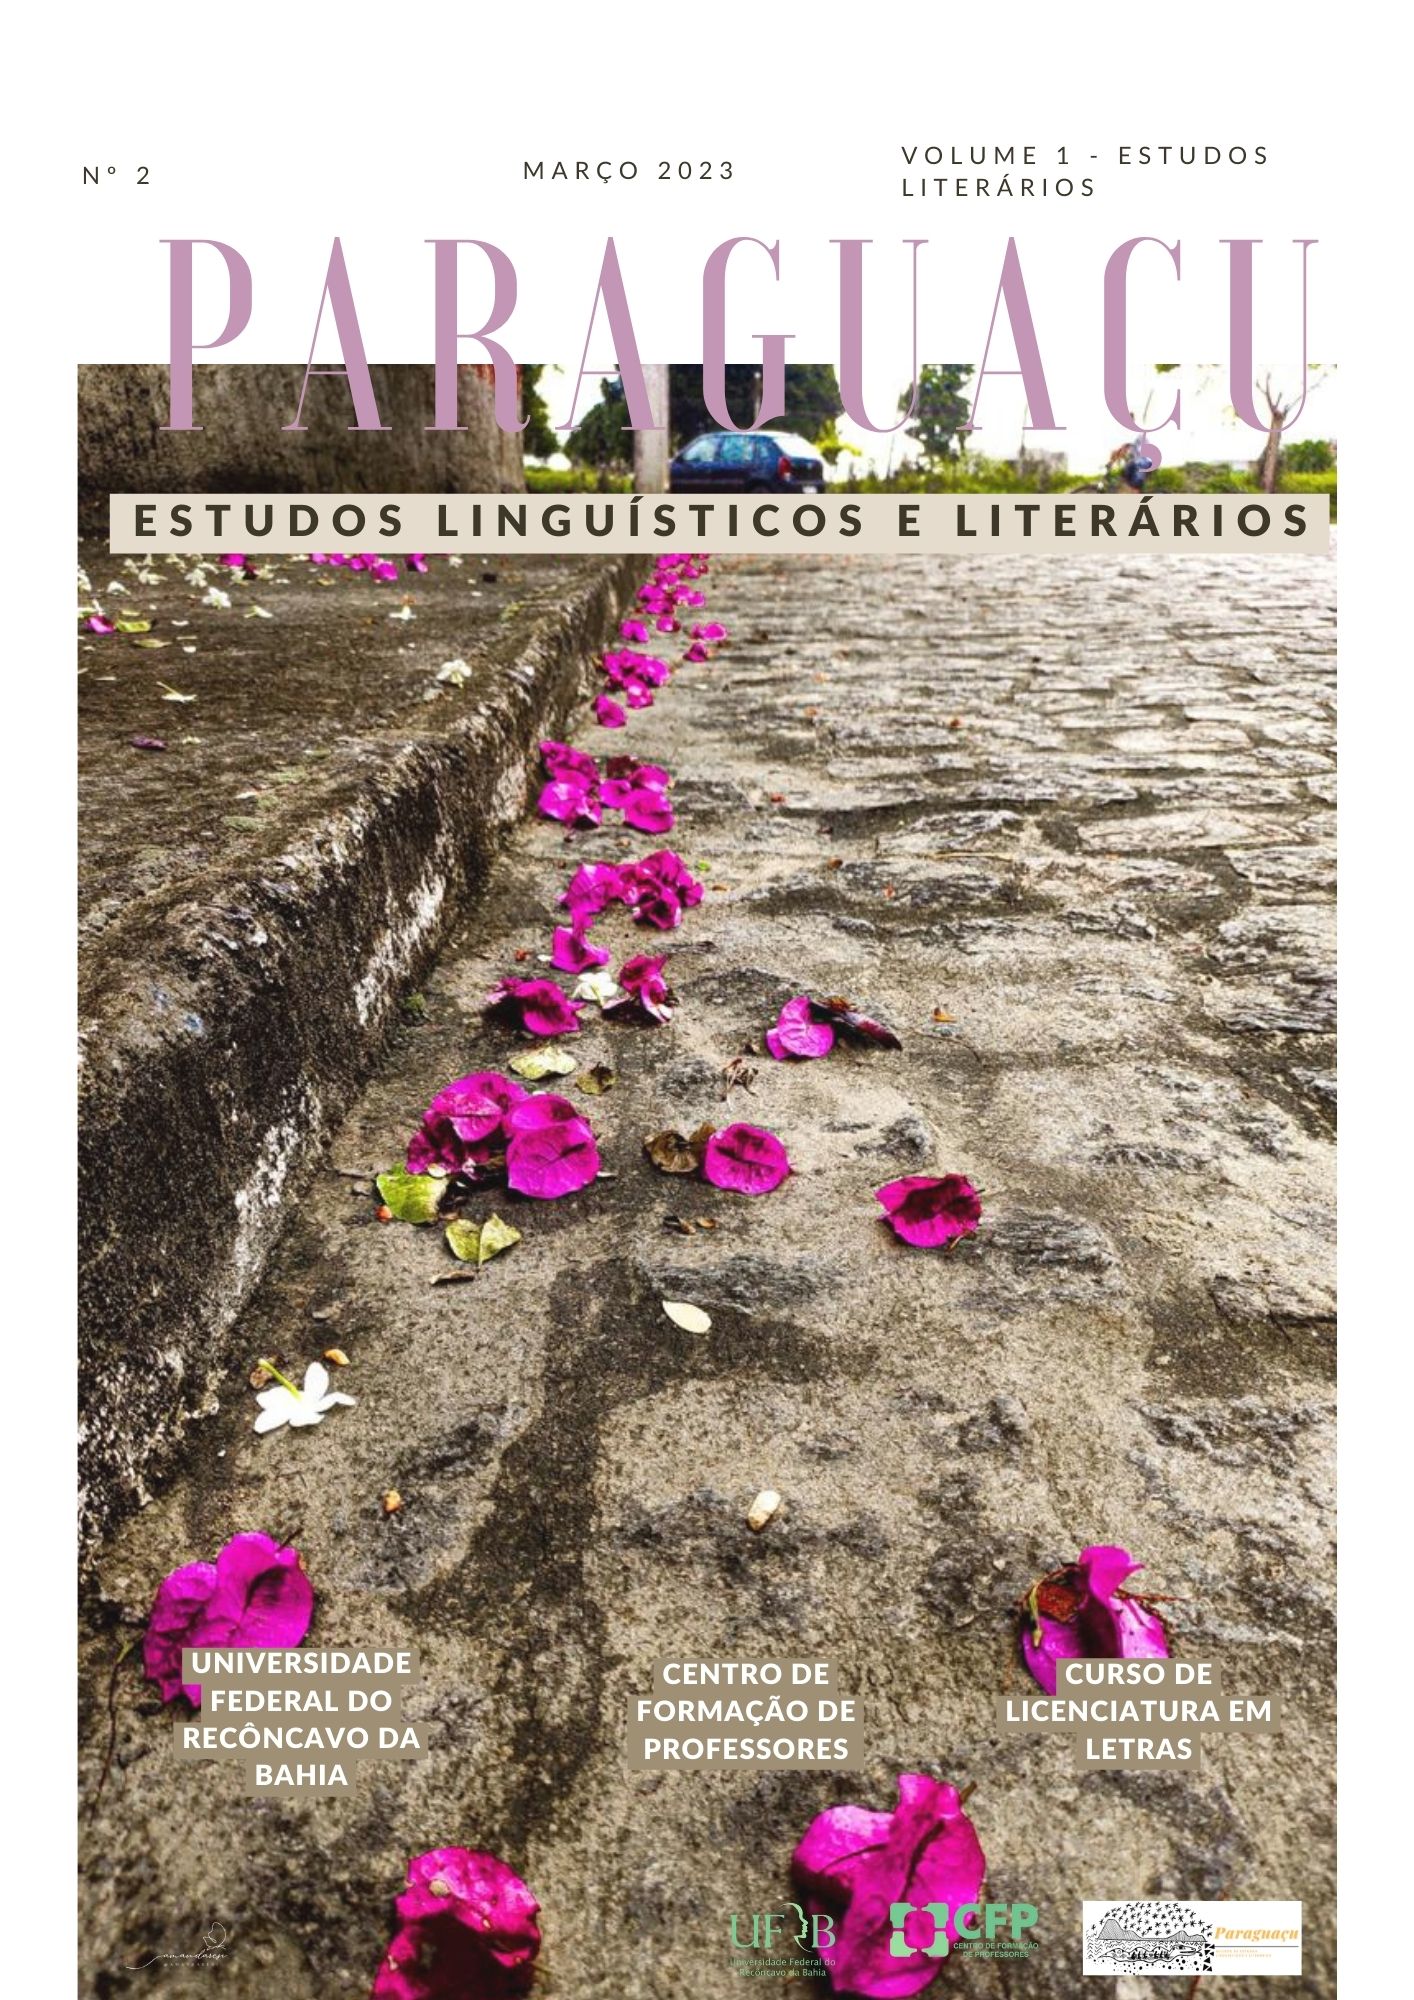 Flores vivas brotando do asfalto, em referência à labuta que significa a publicação da Paraguaçu